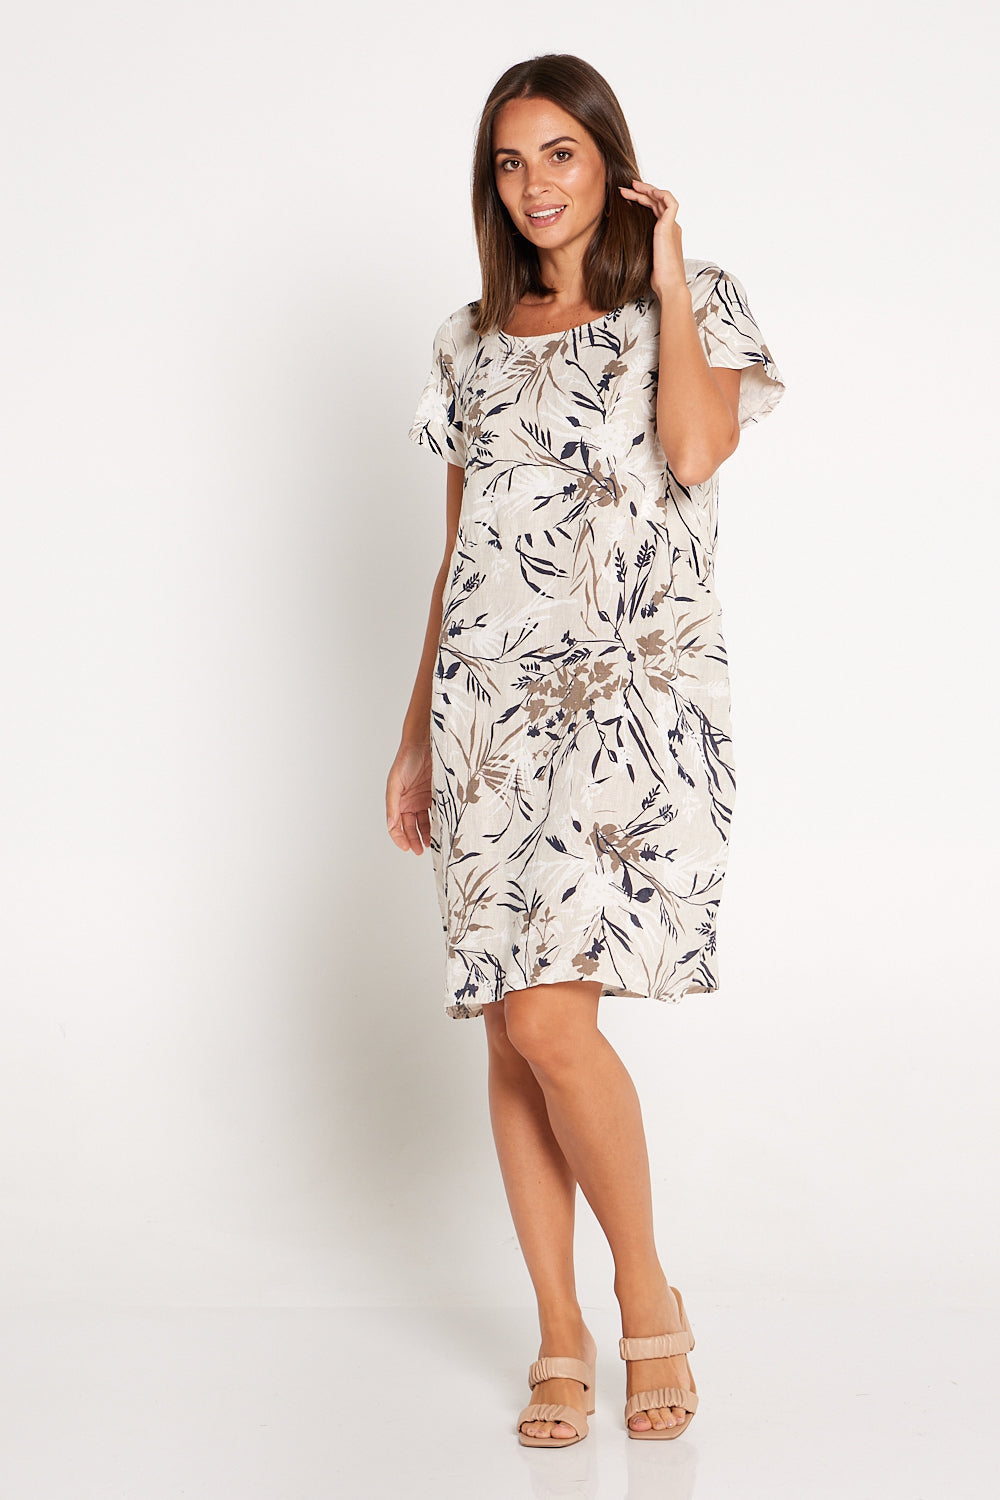 Dahlia Cotton Dress - Beige Floral